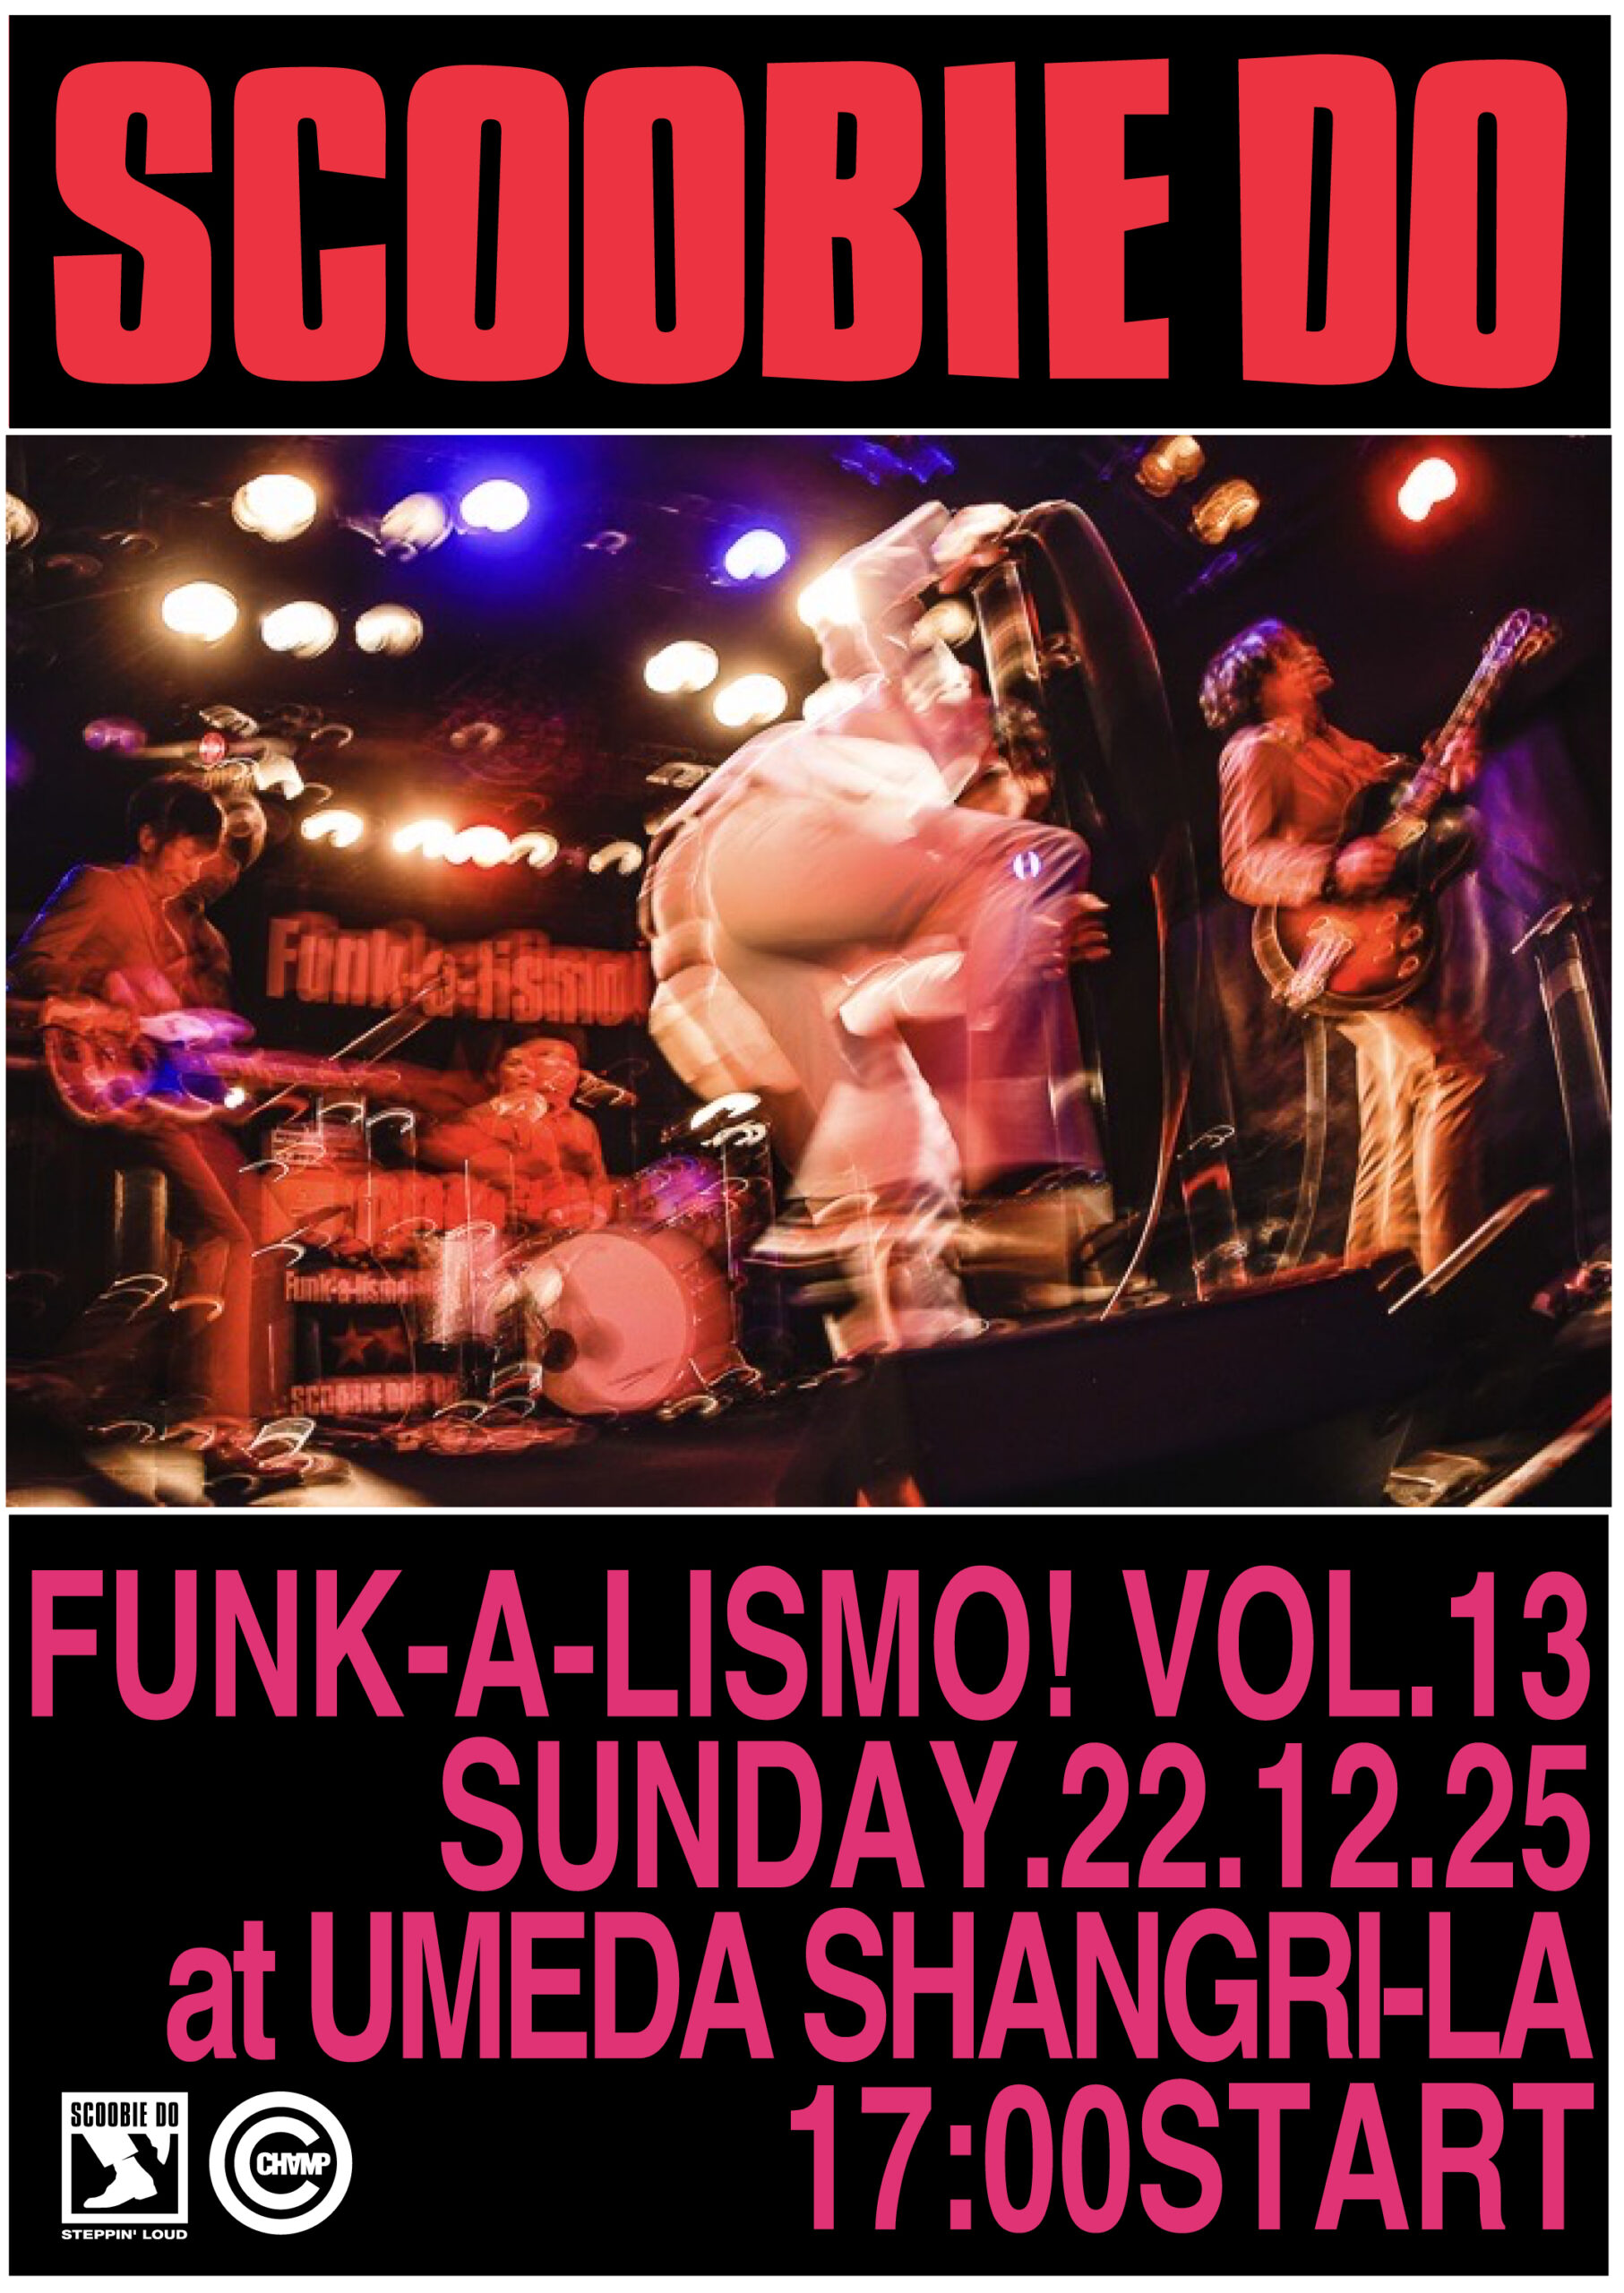 梅田□「Funk-a-lismo! vol.13」 - Scoobie Do | スクービードゥー